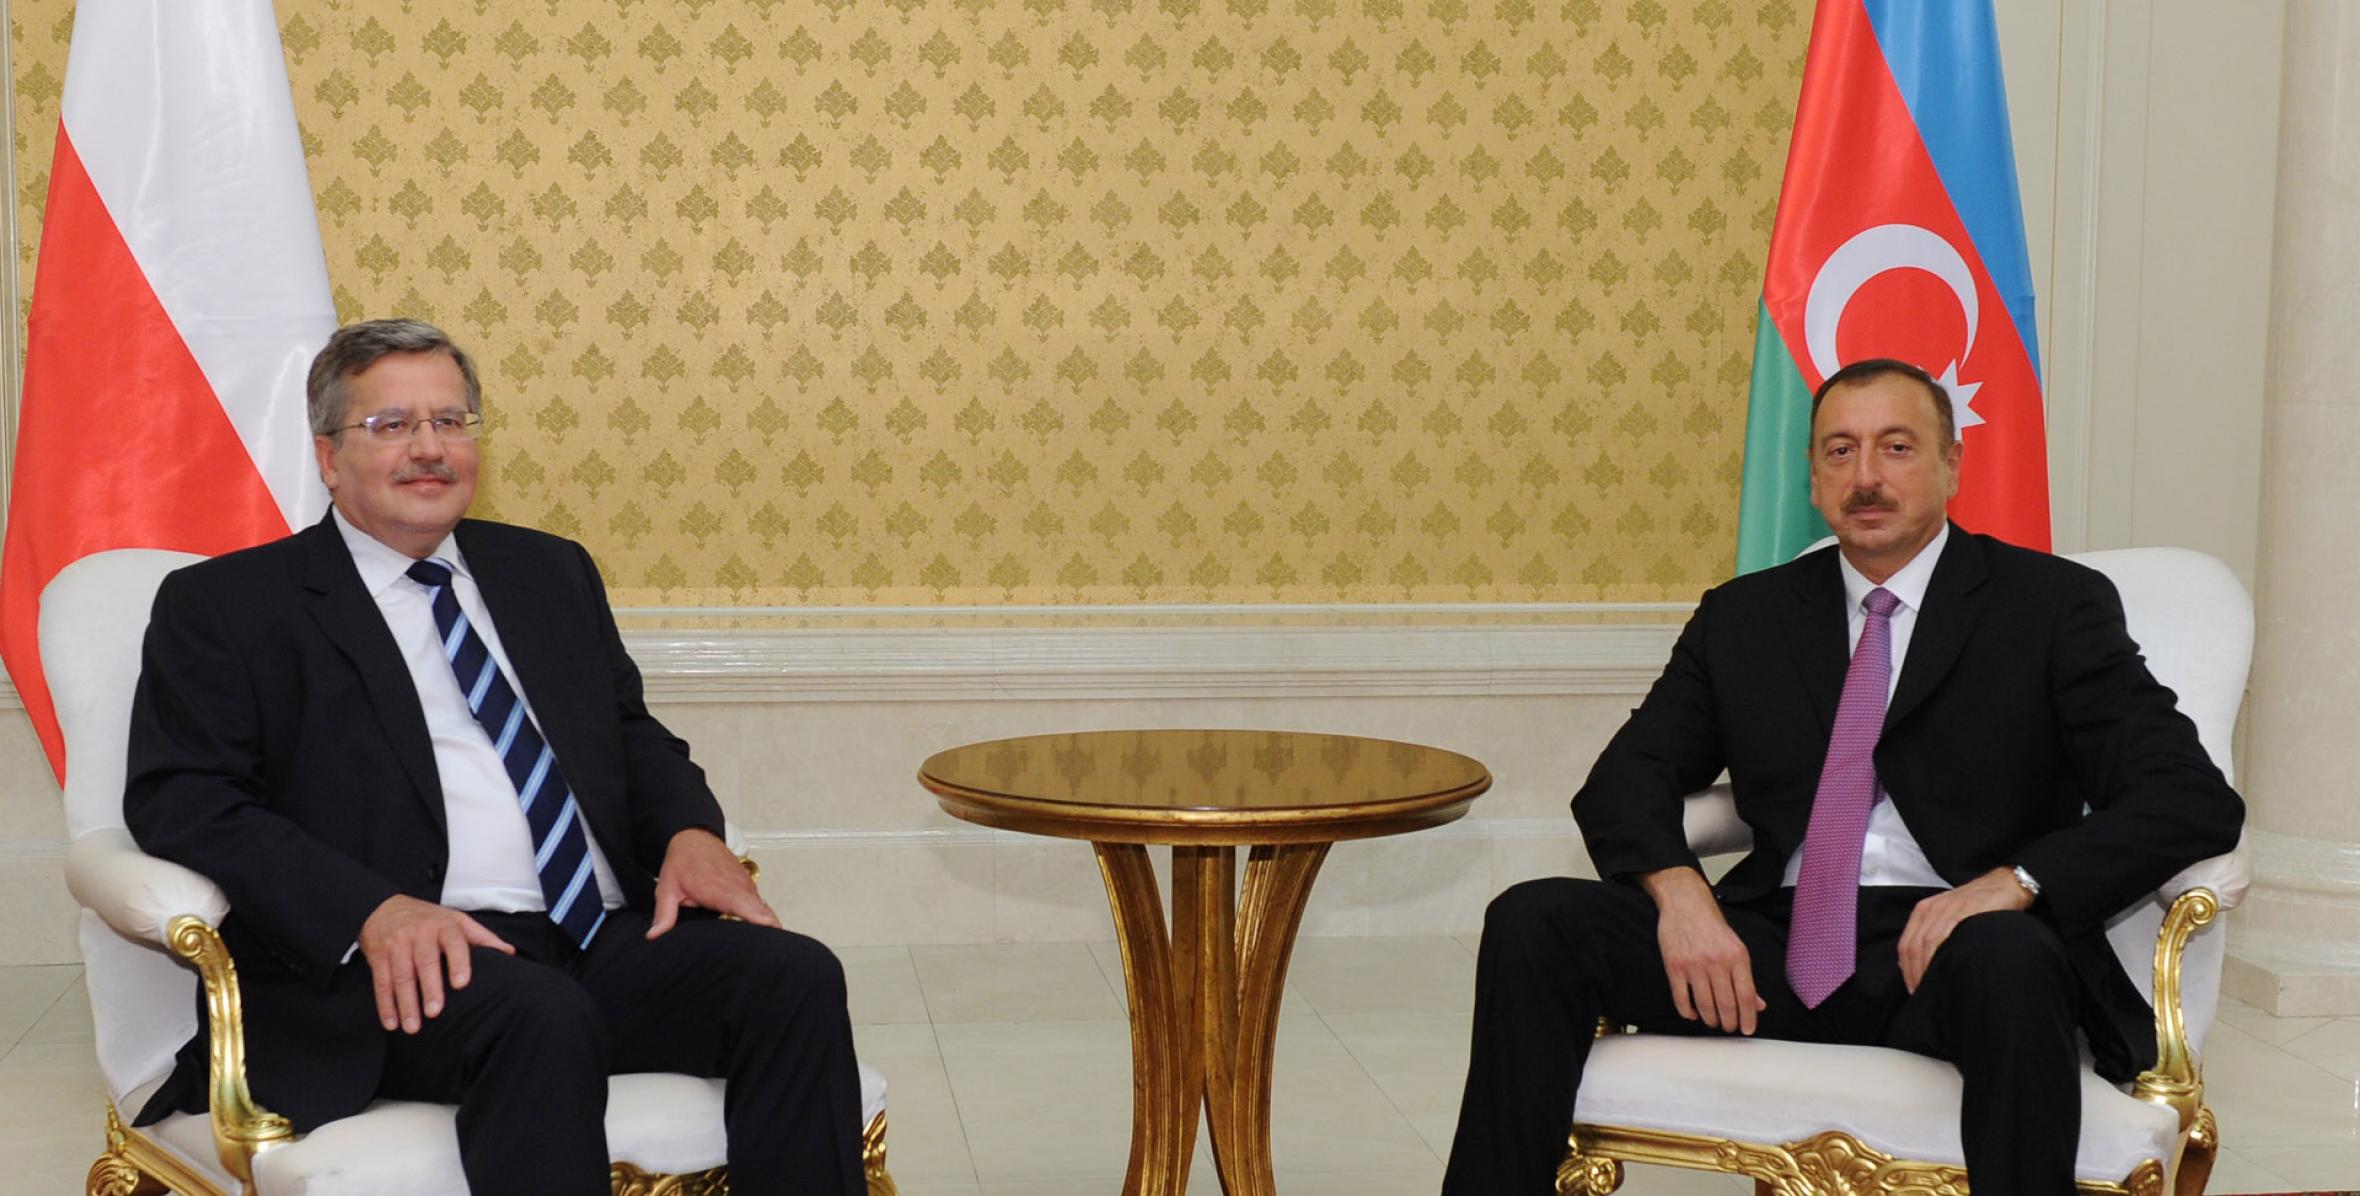 Состоялась встреча Ильхама Алиева и Президента Польши Бронислава Коморовского один на один